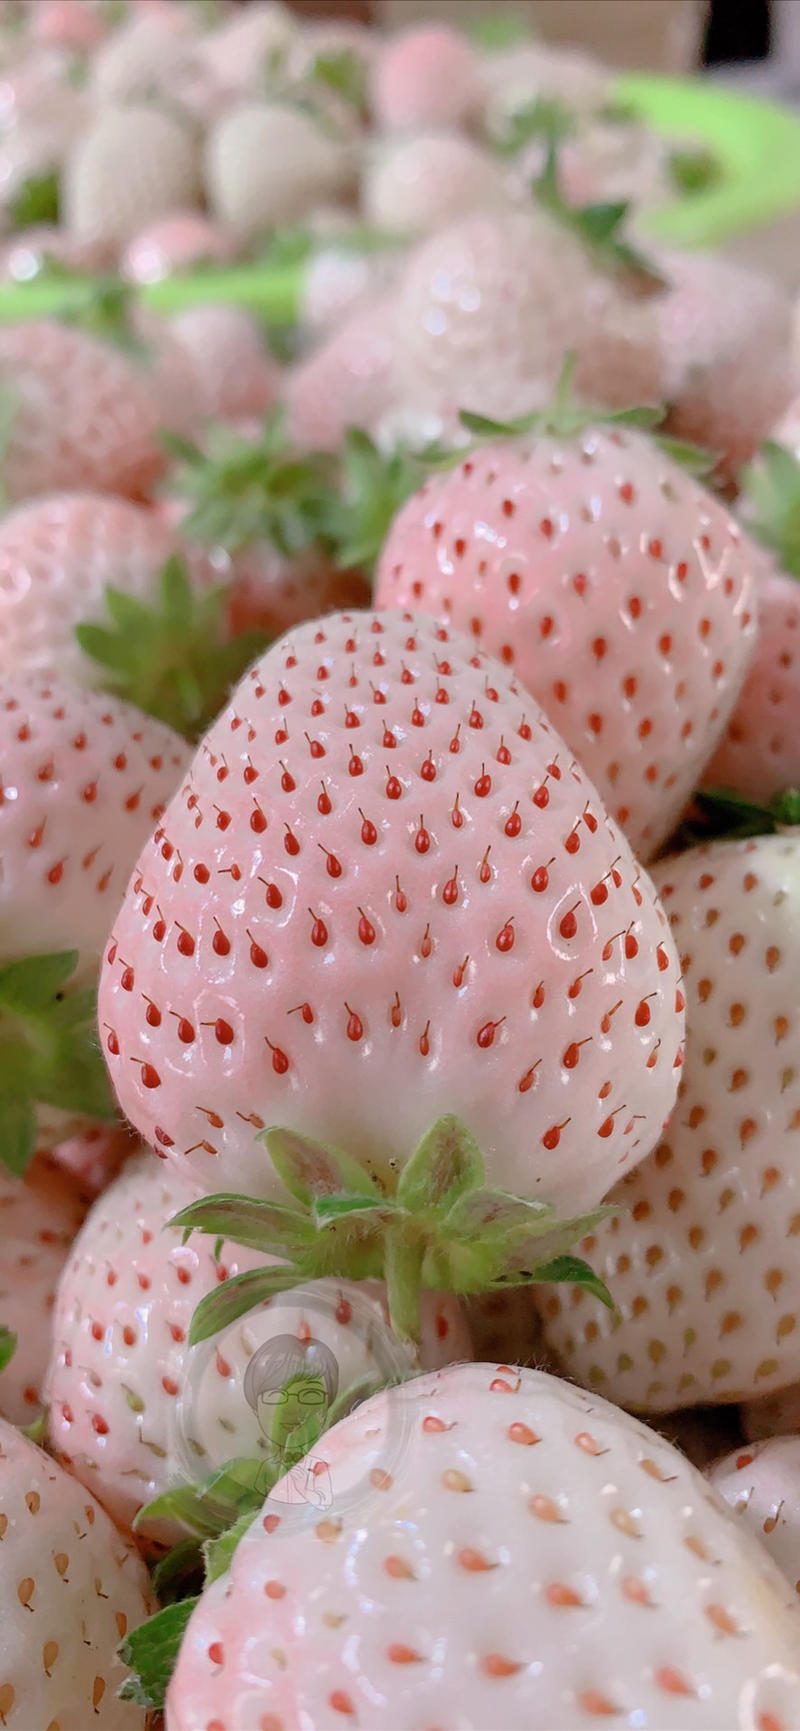 山东烟台日本奈良淡雪白草莓公主白雪小町一件代发顺丰包邮